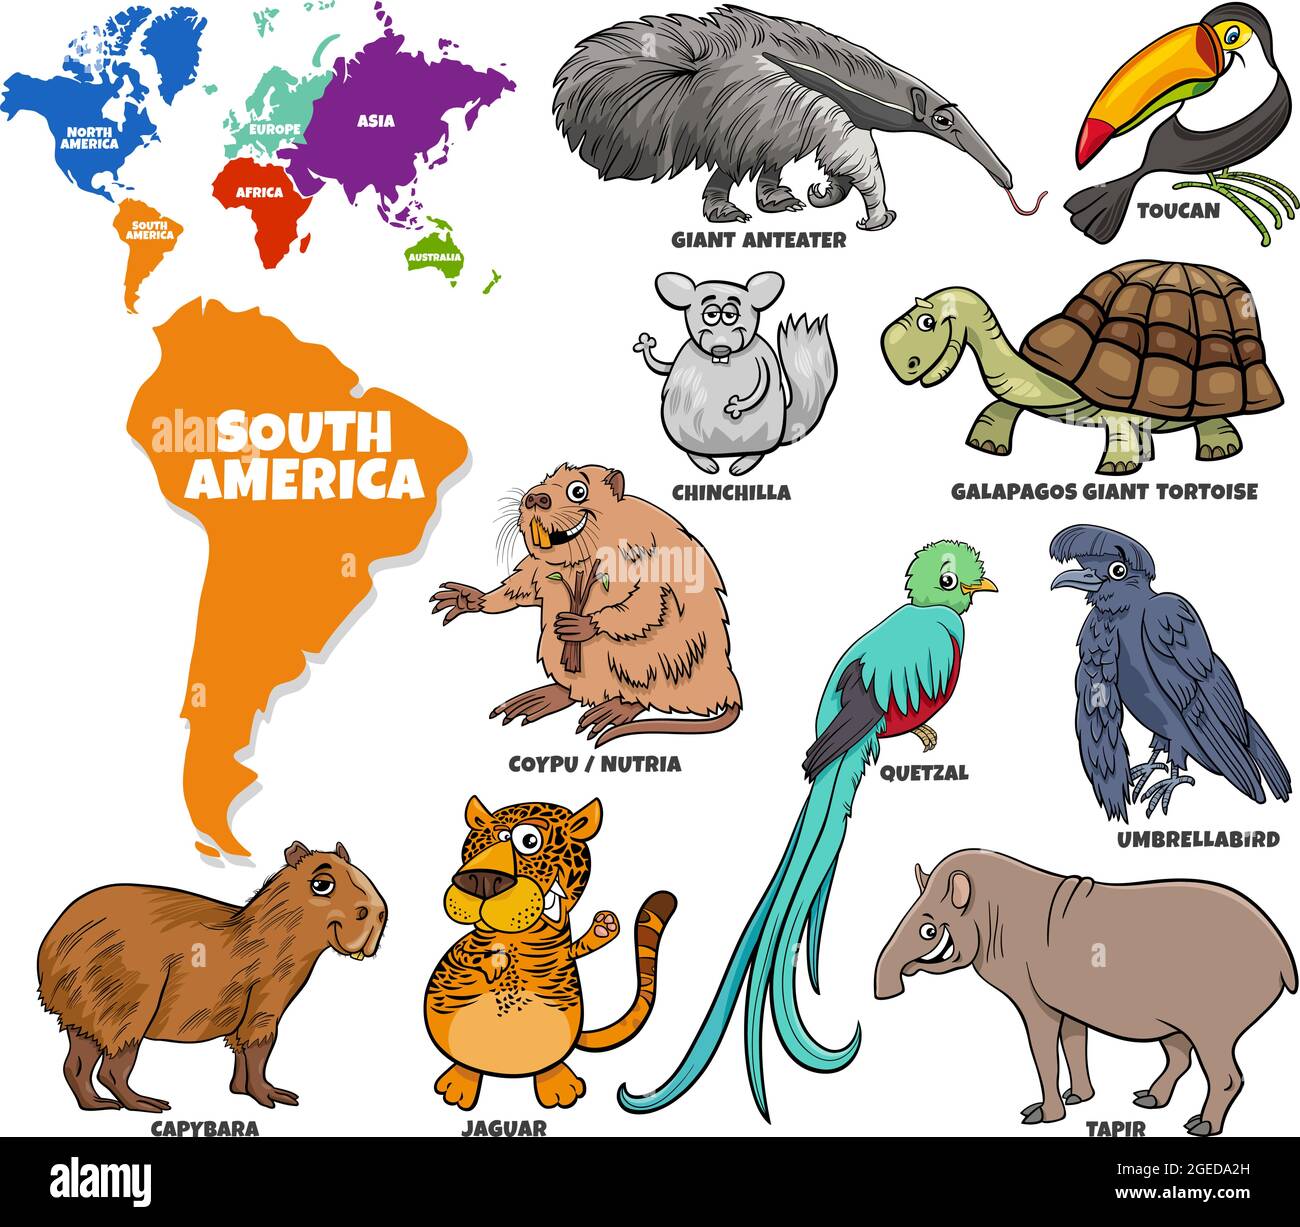 Cartoni animati educativi che raffigura il set di personaggi animali sudamericani e la mappa del mondo con le forme dei continenti Illustrazione Vettoriale